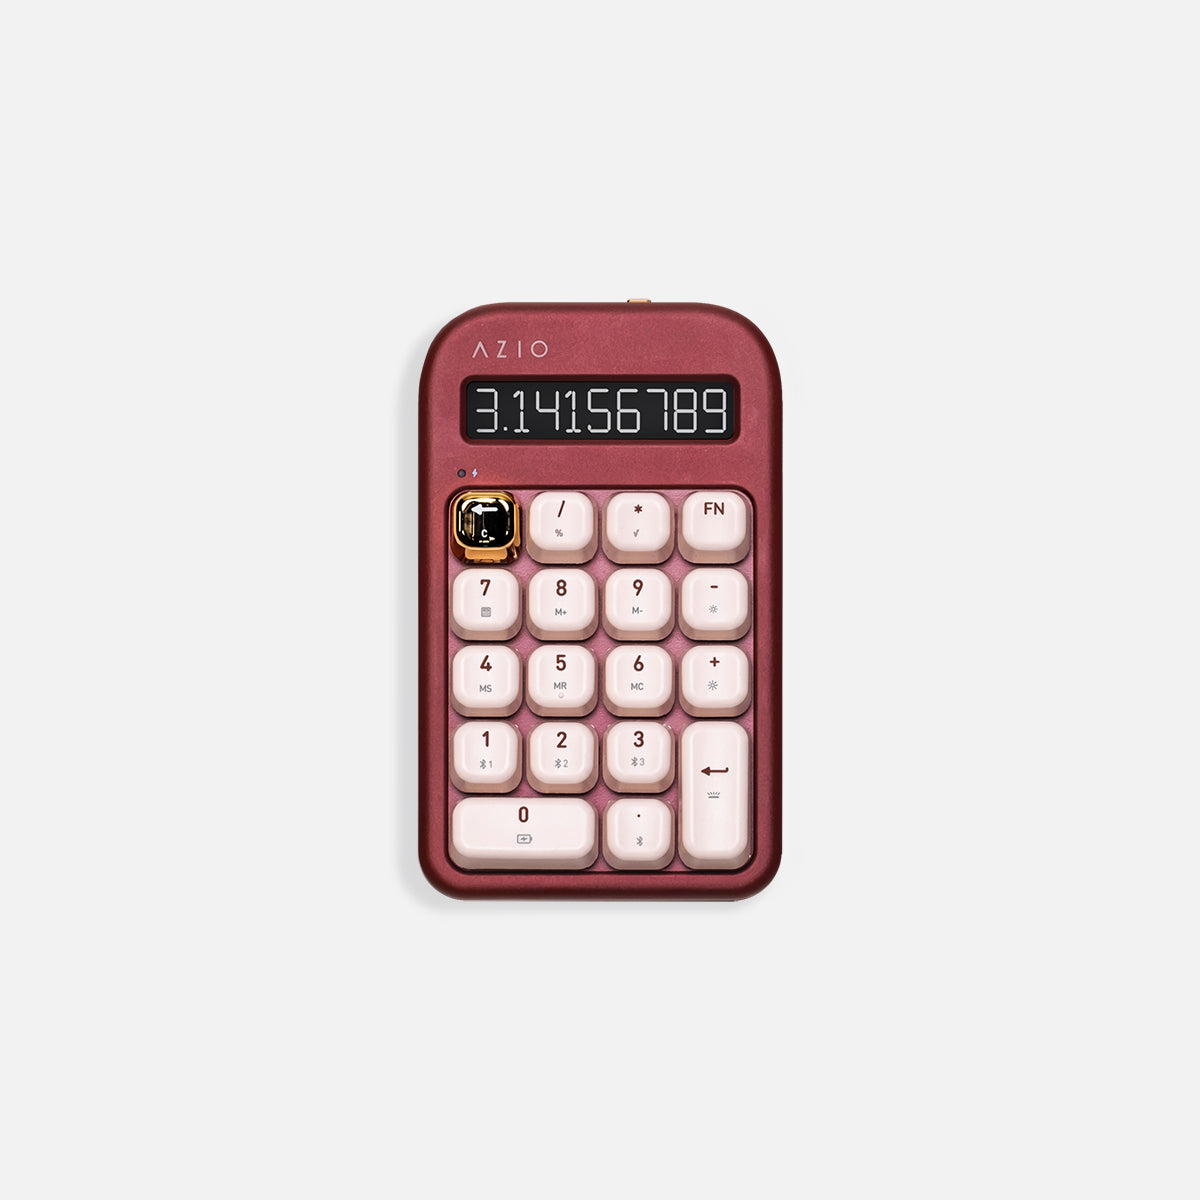 Numpad / calculadora Izo (interruptor azul)